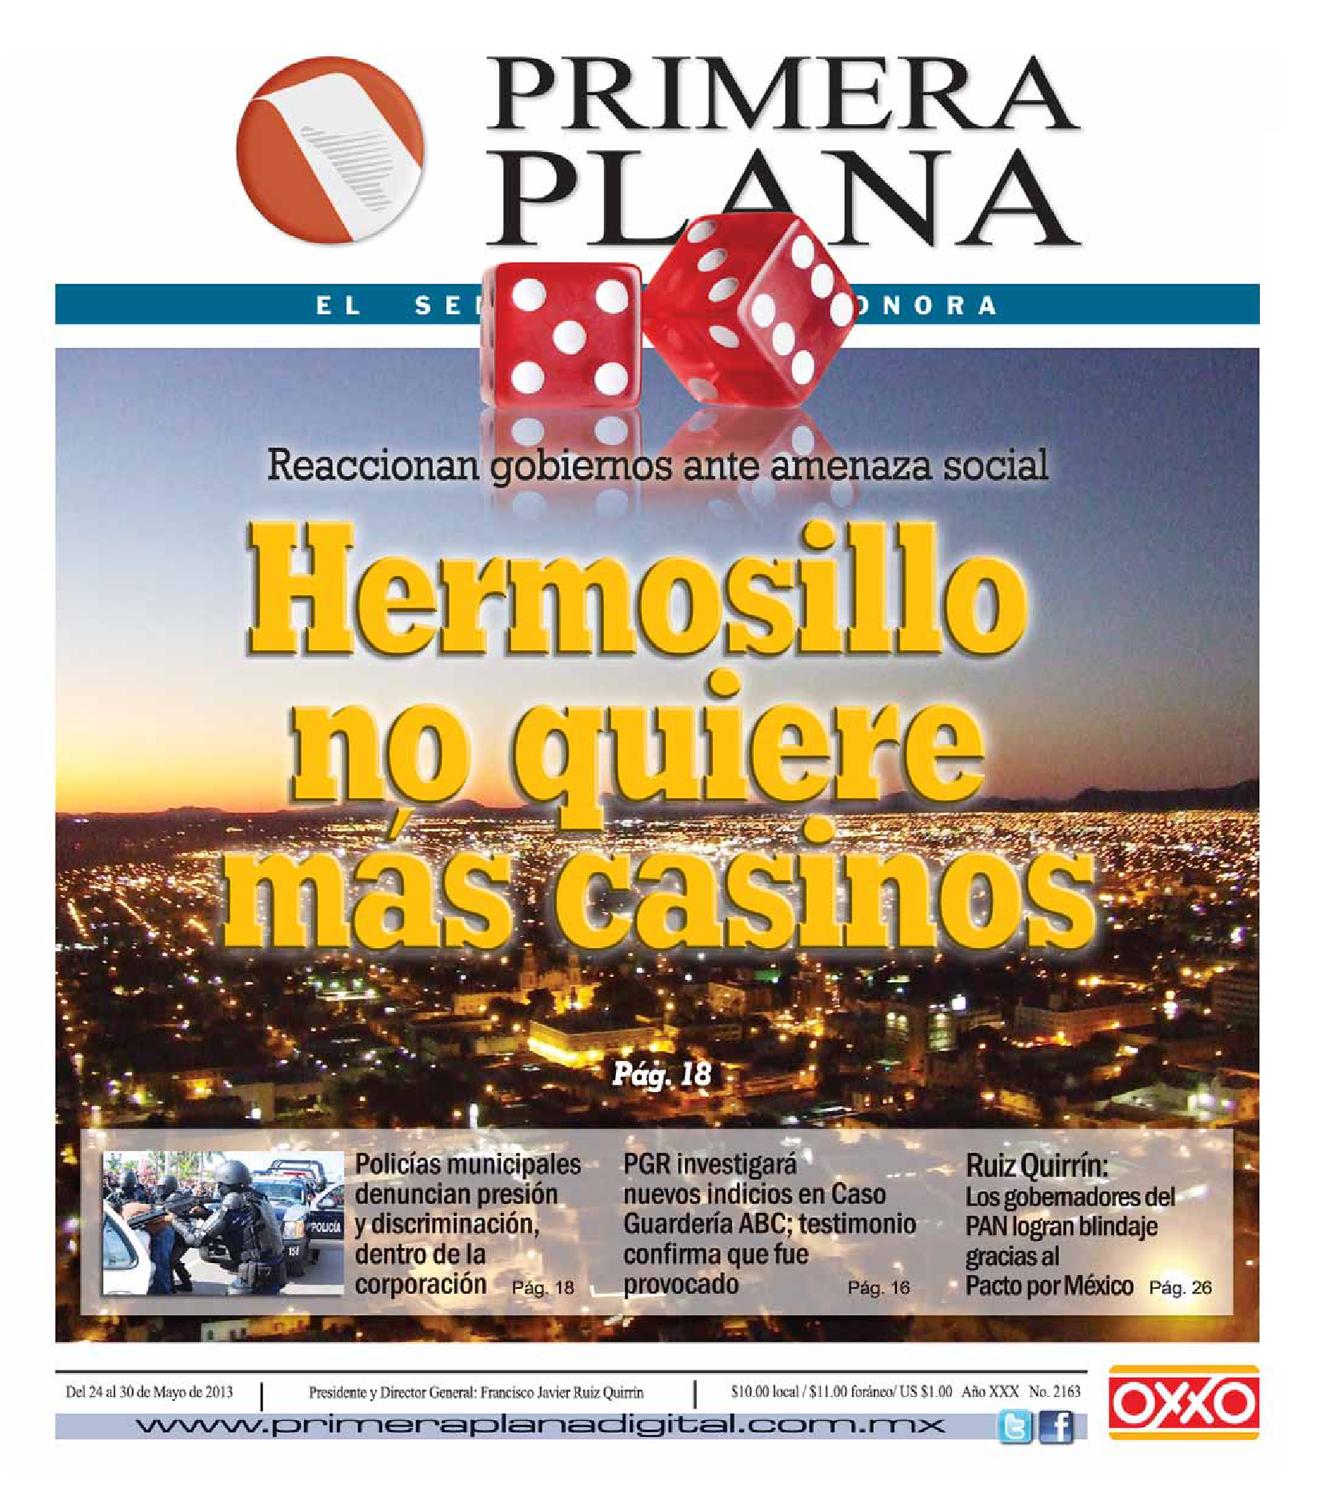 Enviar dinero casino de forma segura comprar loteria en Almada - 68244